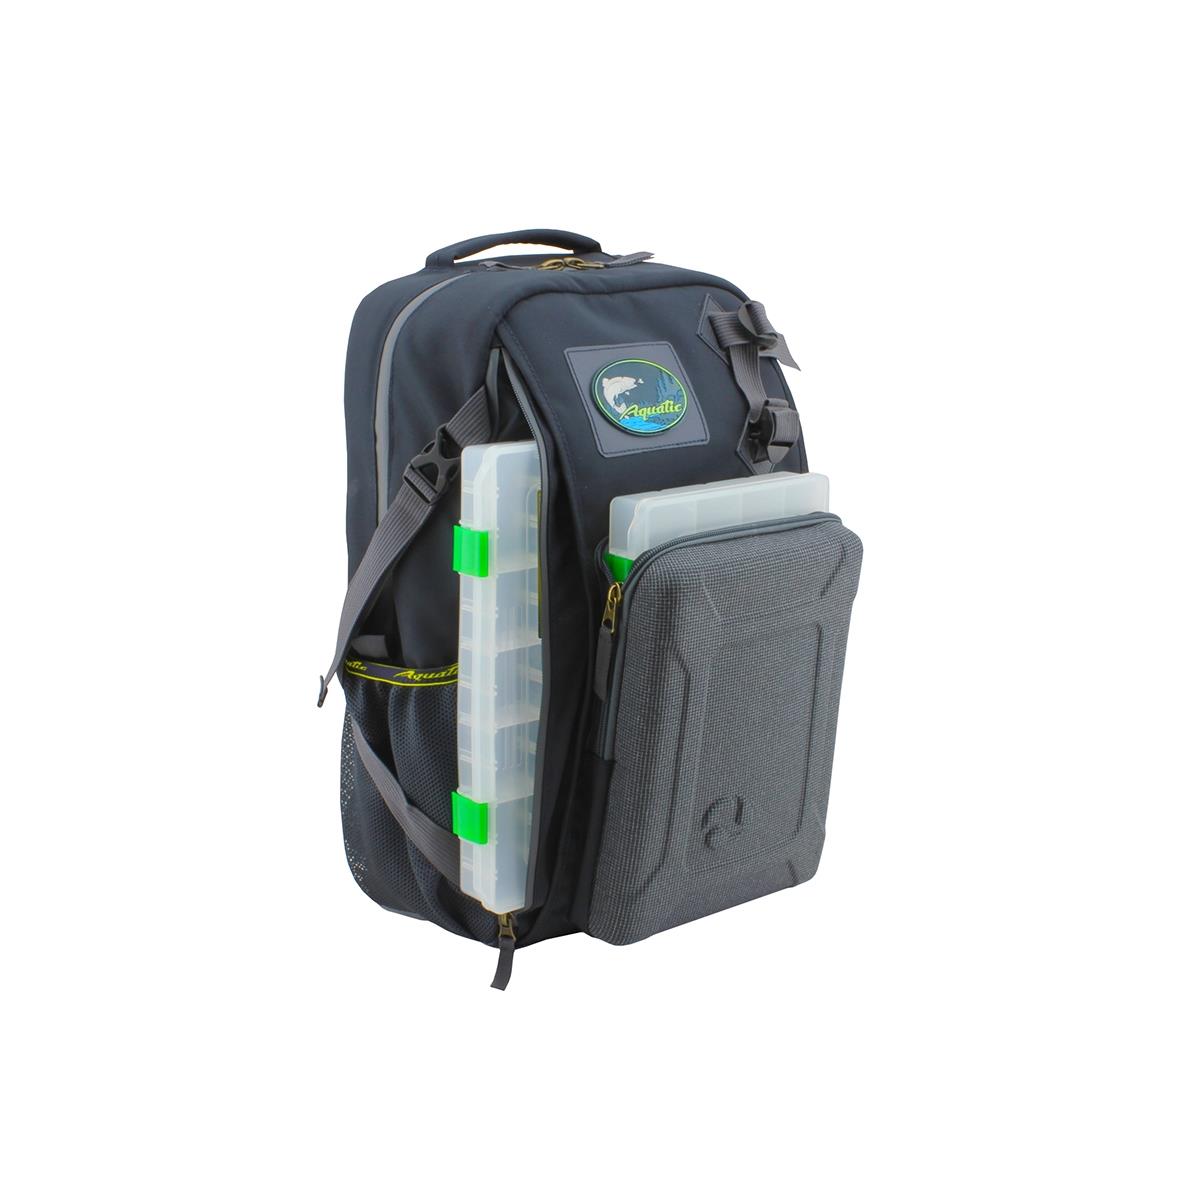 Рюкзак рыболовный с коробками FisherBox РК-02 AQUATIC рюкзак отдел на молнии 2 наружных кармана зелёный